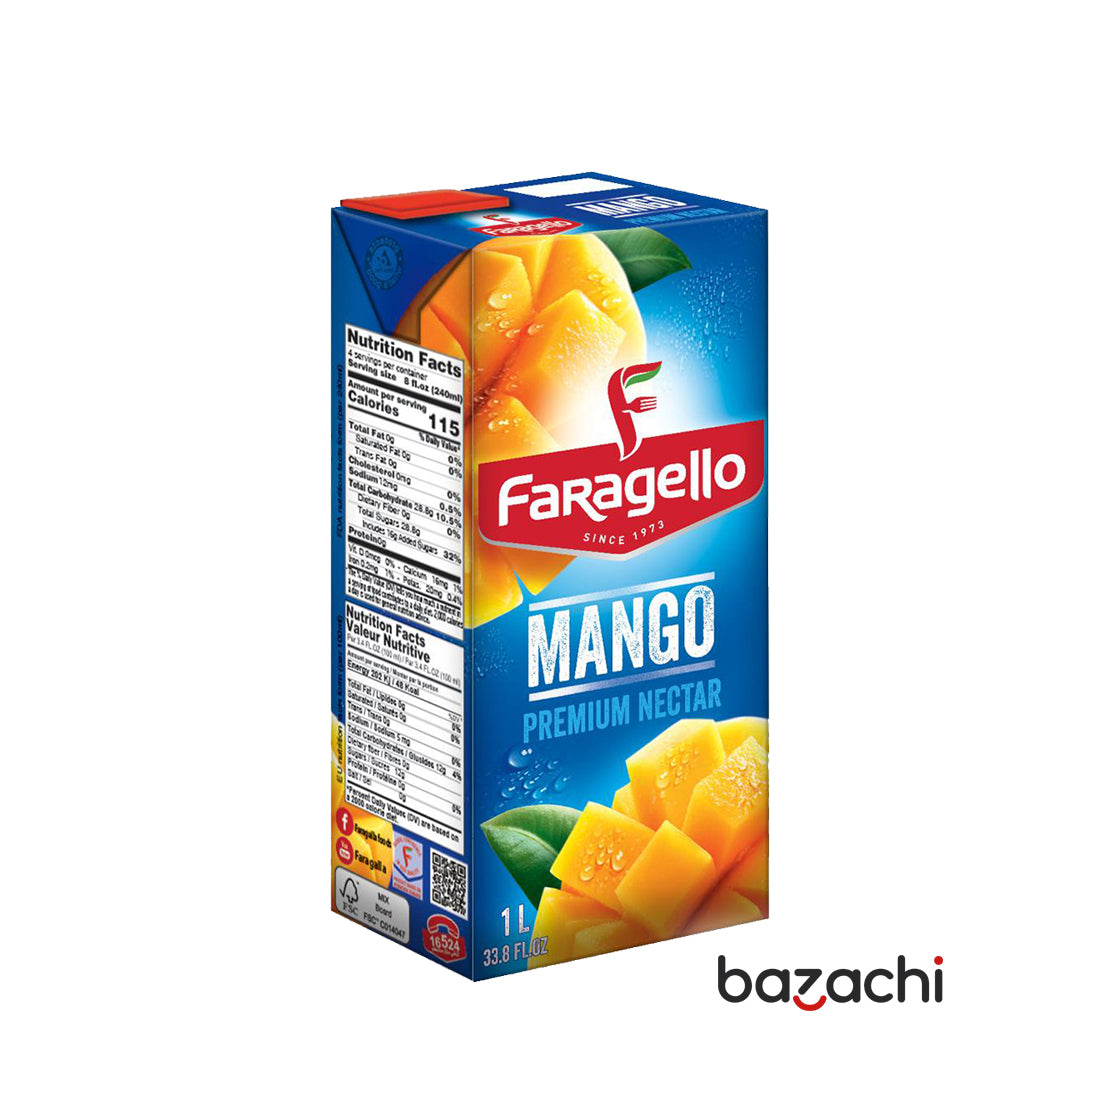 Faragello Mango Nectar Premium Juice 1L